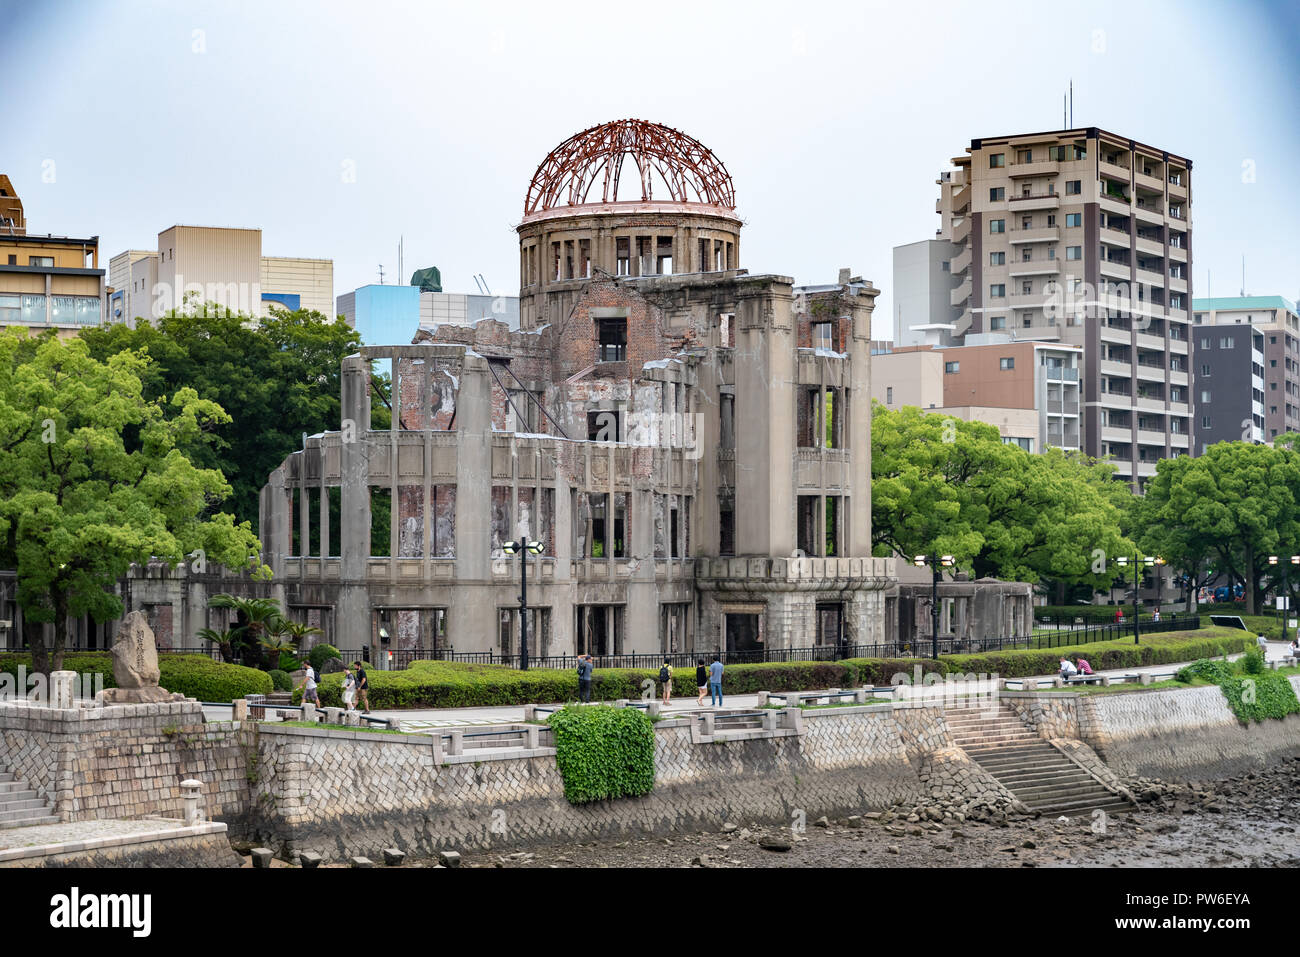 Hiroshima,Japan - JUNE 27 2017: Atomic Bomb Dome memorial building in Hiroshima,Japan Stock Photo